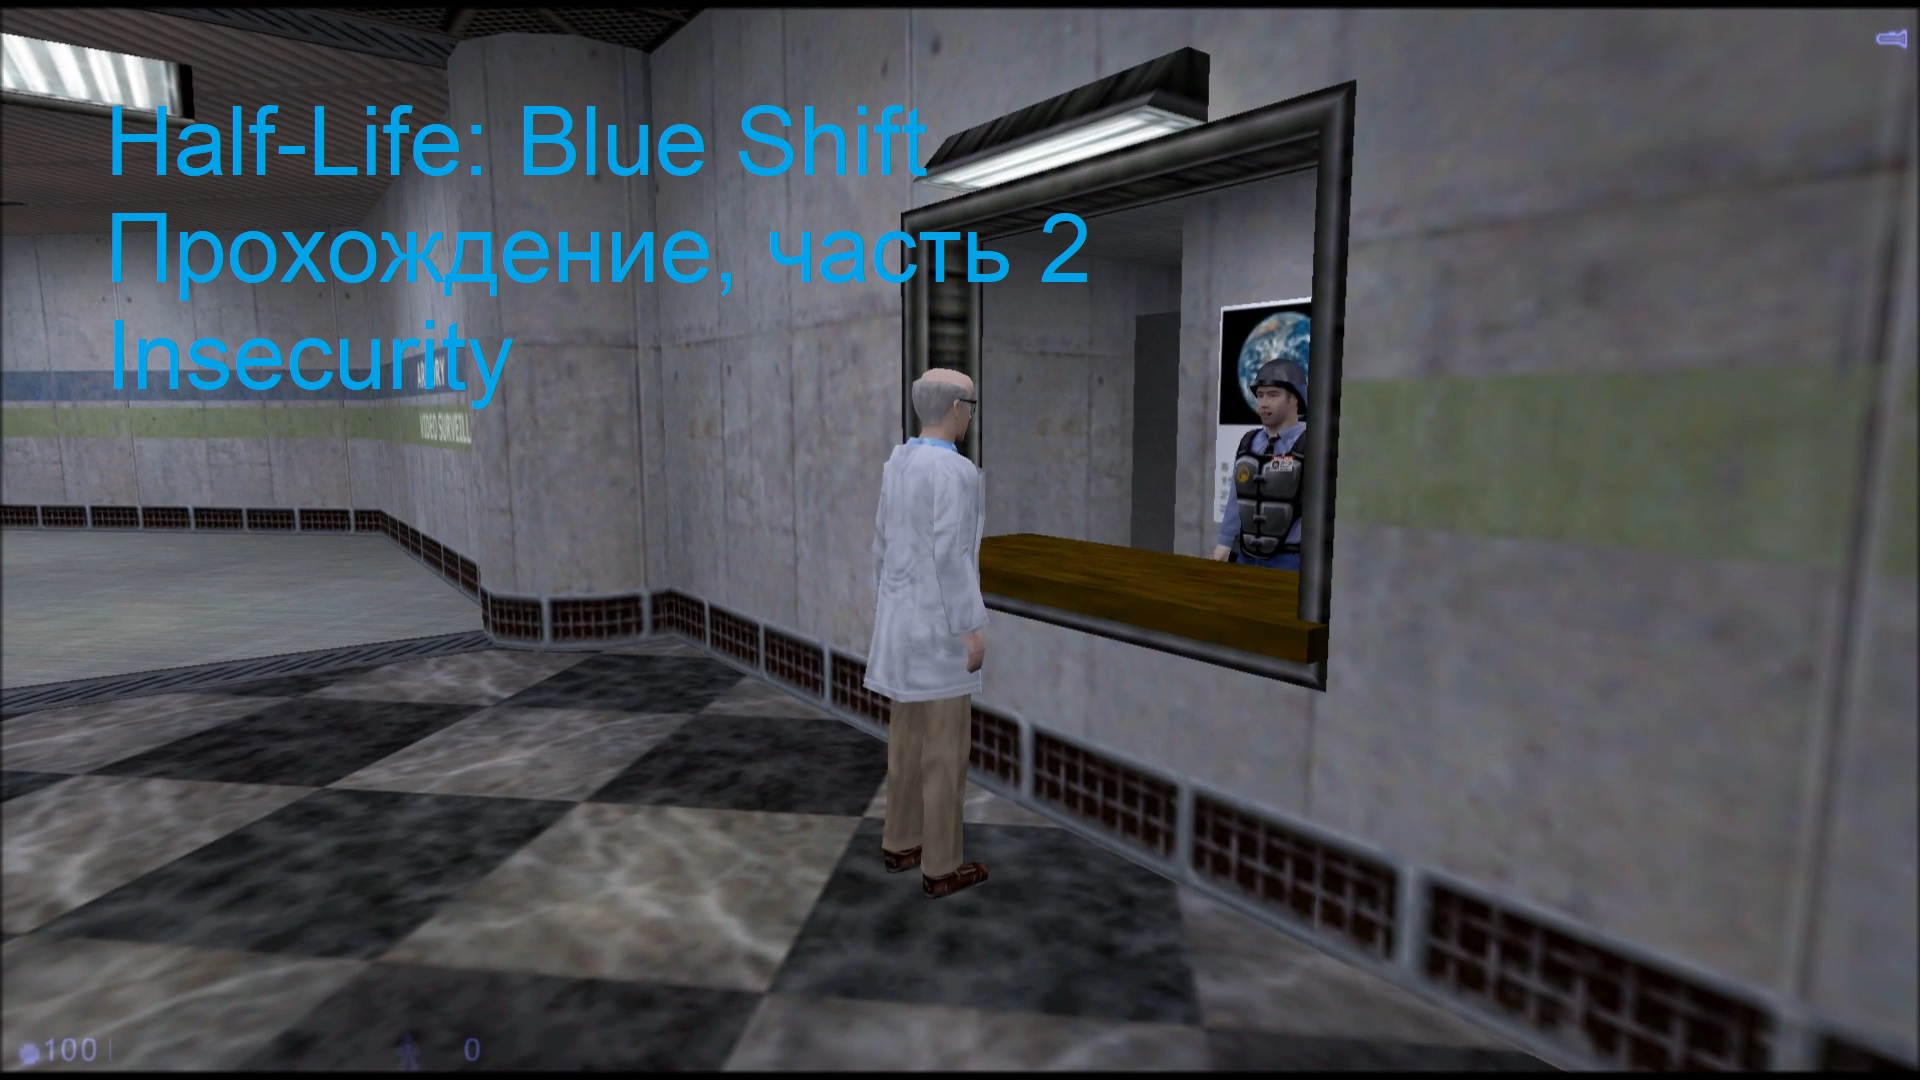 Half-Life: Blue Shift, Прохождение, часть 2 - Insecurity